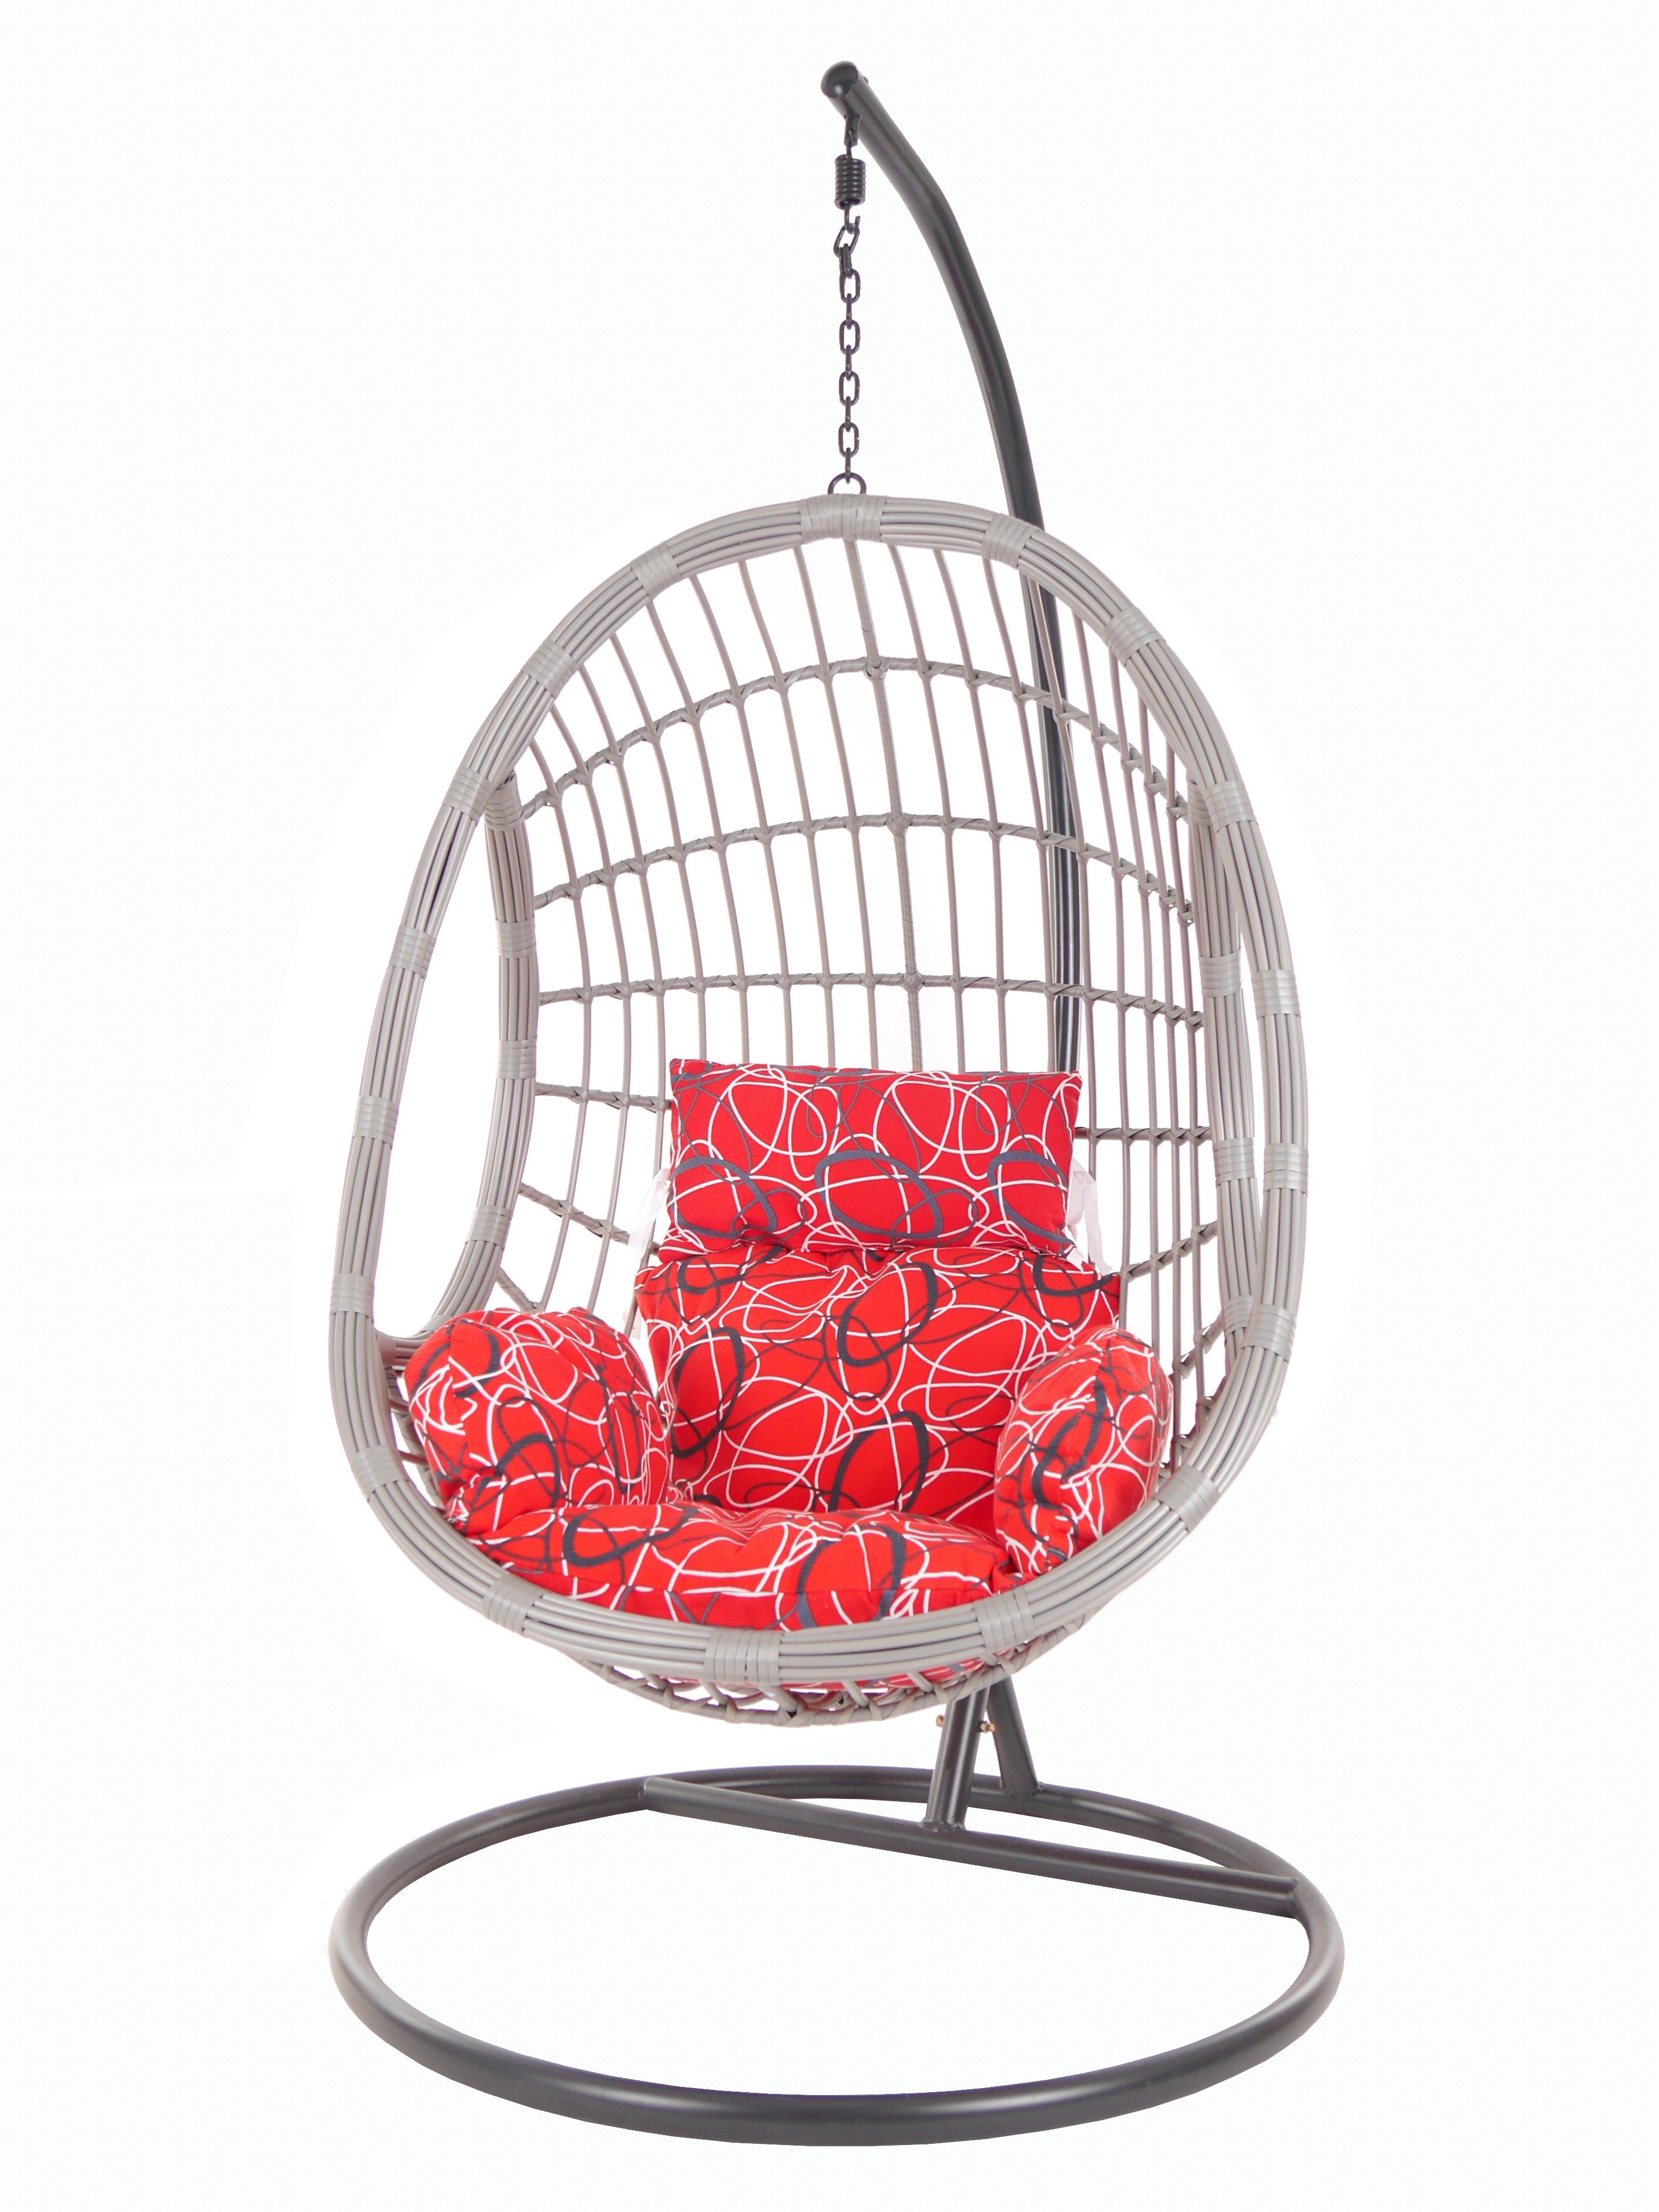 Loungemöbel, rot gemustert PALMANOVA Swing Hängesessel KIDEO und Hängesessel frizzy) Gestell Chair, (3088 lightgrey, red Kissen mit